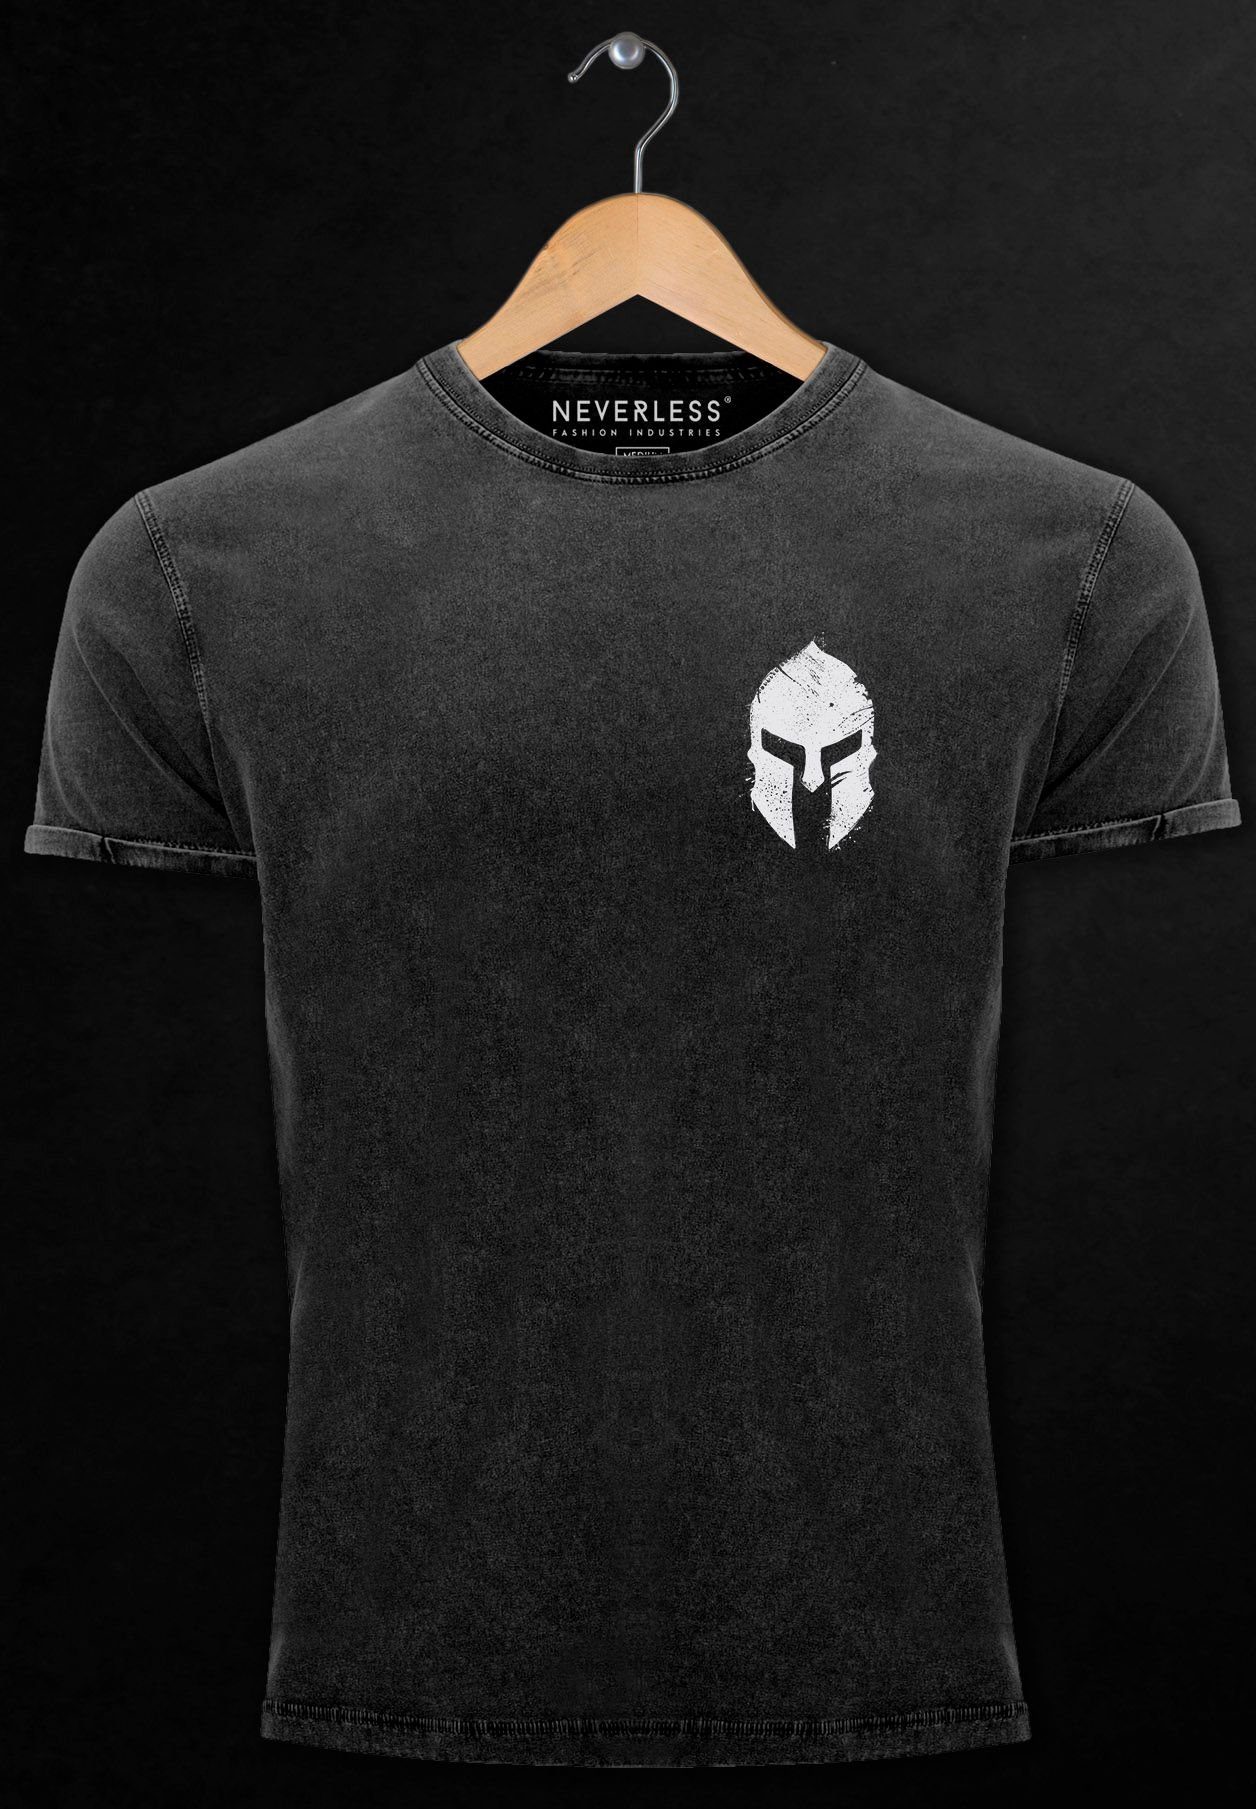 mit Herren Vintage -weiss Print Print-Shirt Kriege Shirt Sparta-Helm Logo Neverless Gladiator Spartaner schwarz Print